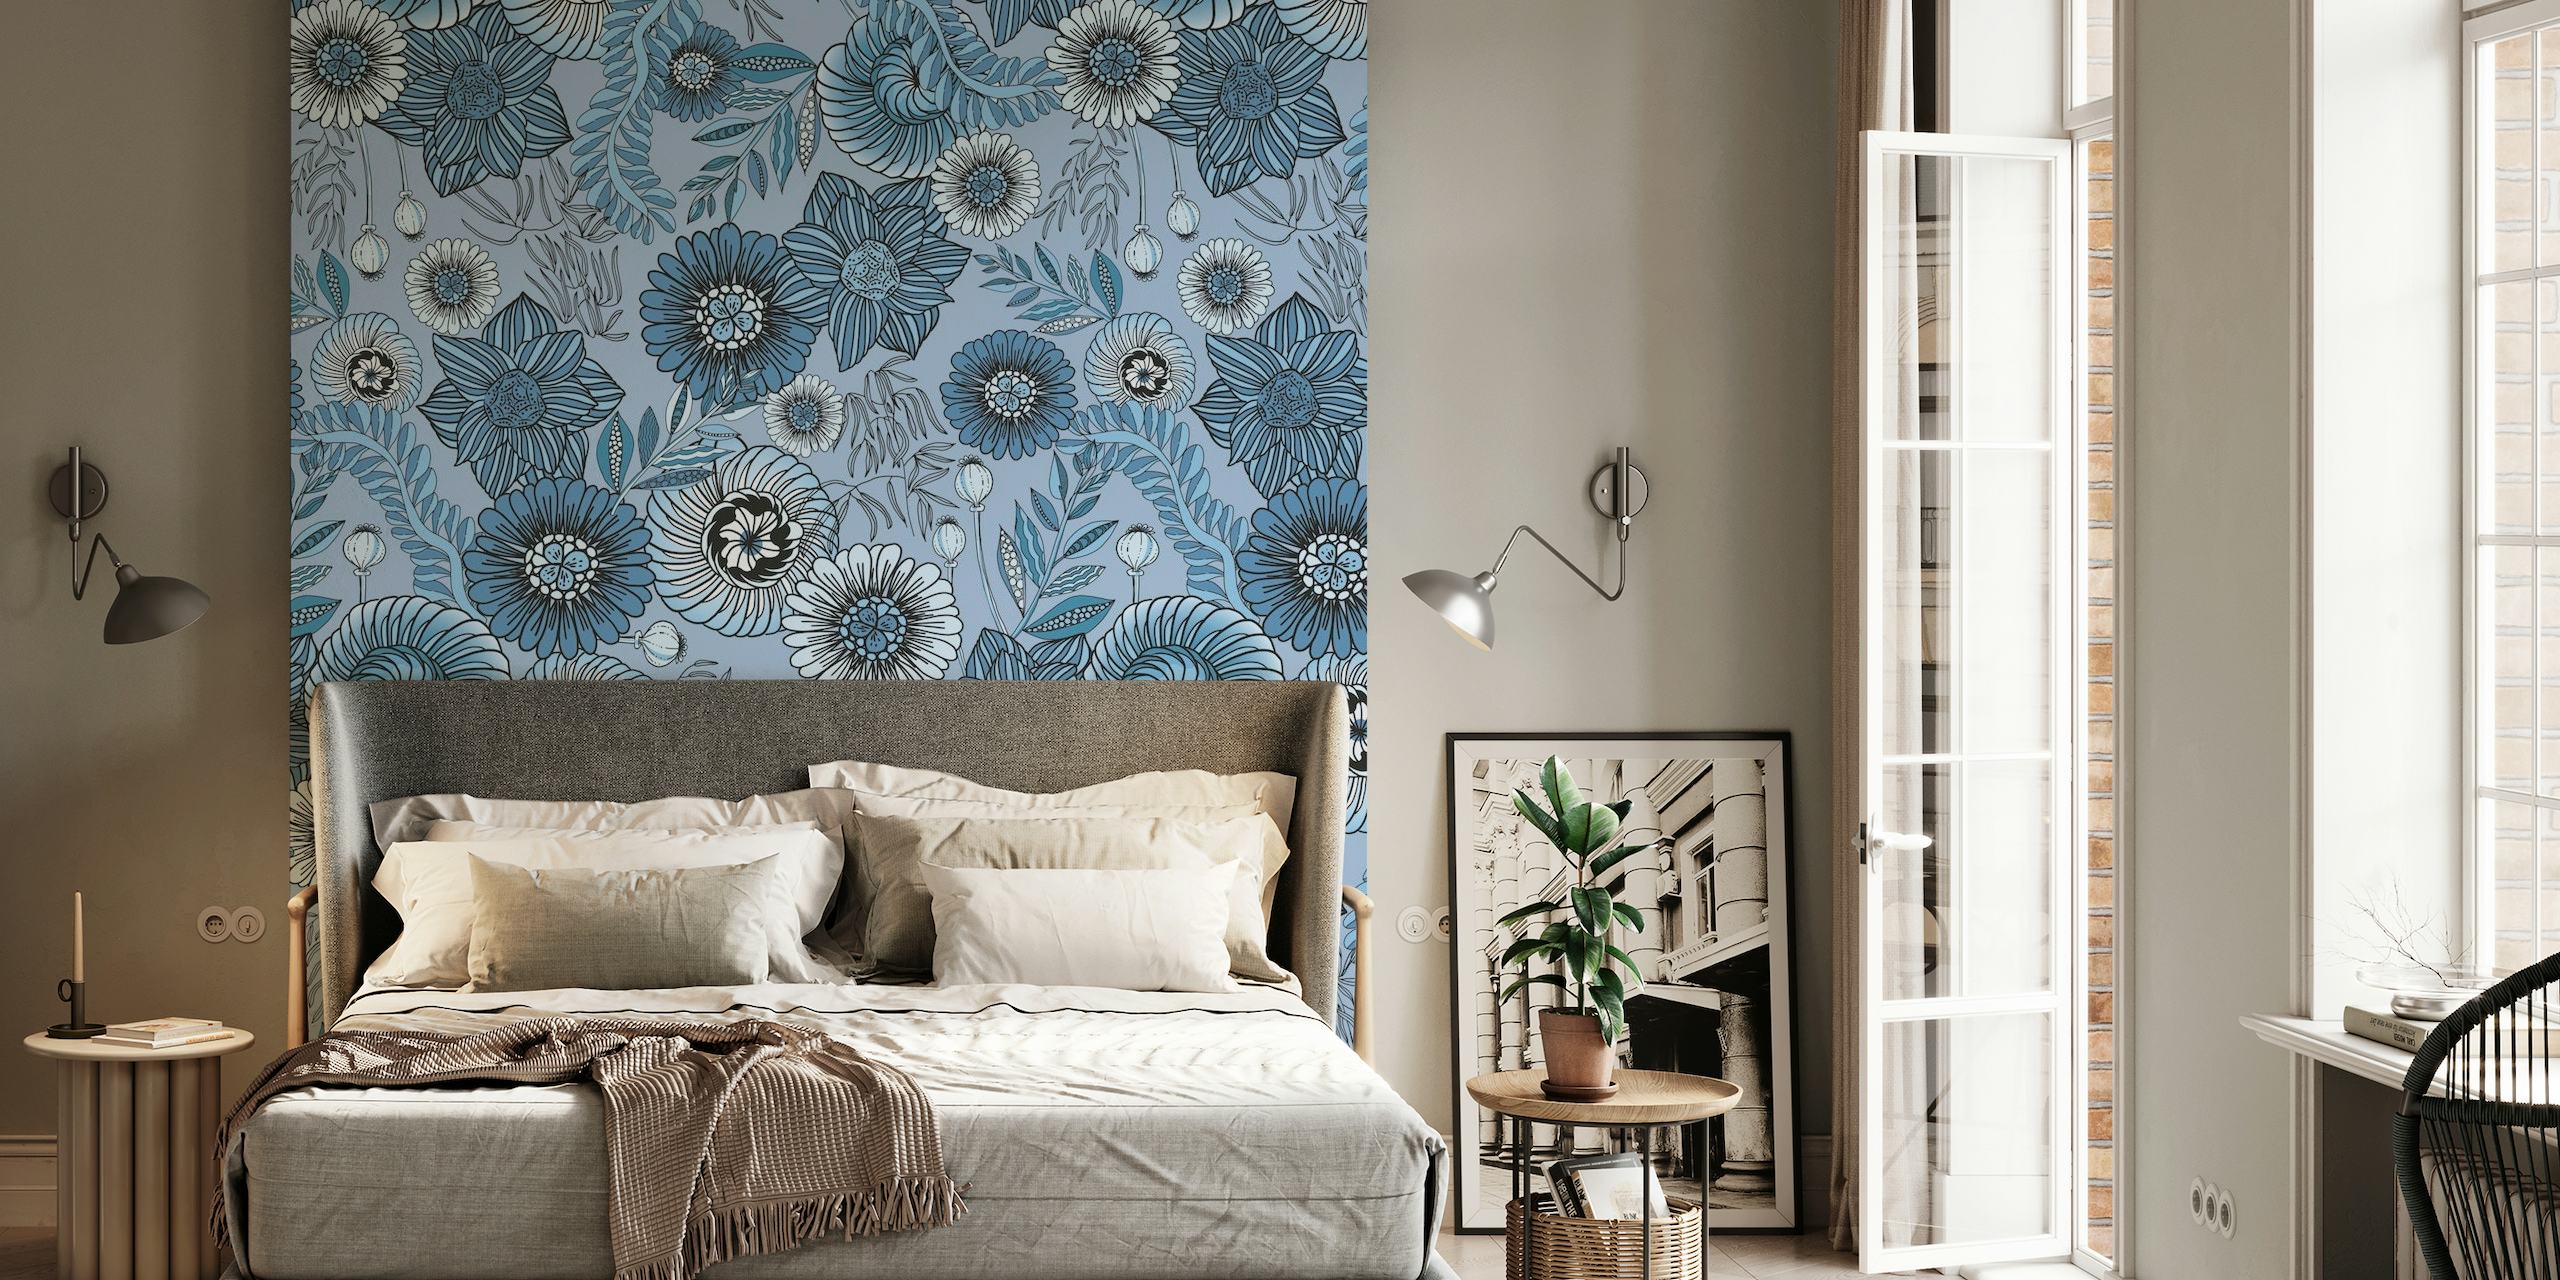 Fotomural vinílico de parede de flores azuis temperamentais com intrincados padrões florais em tons de azul.